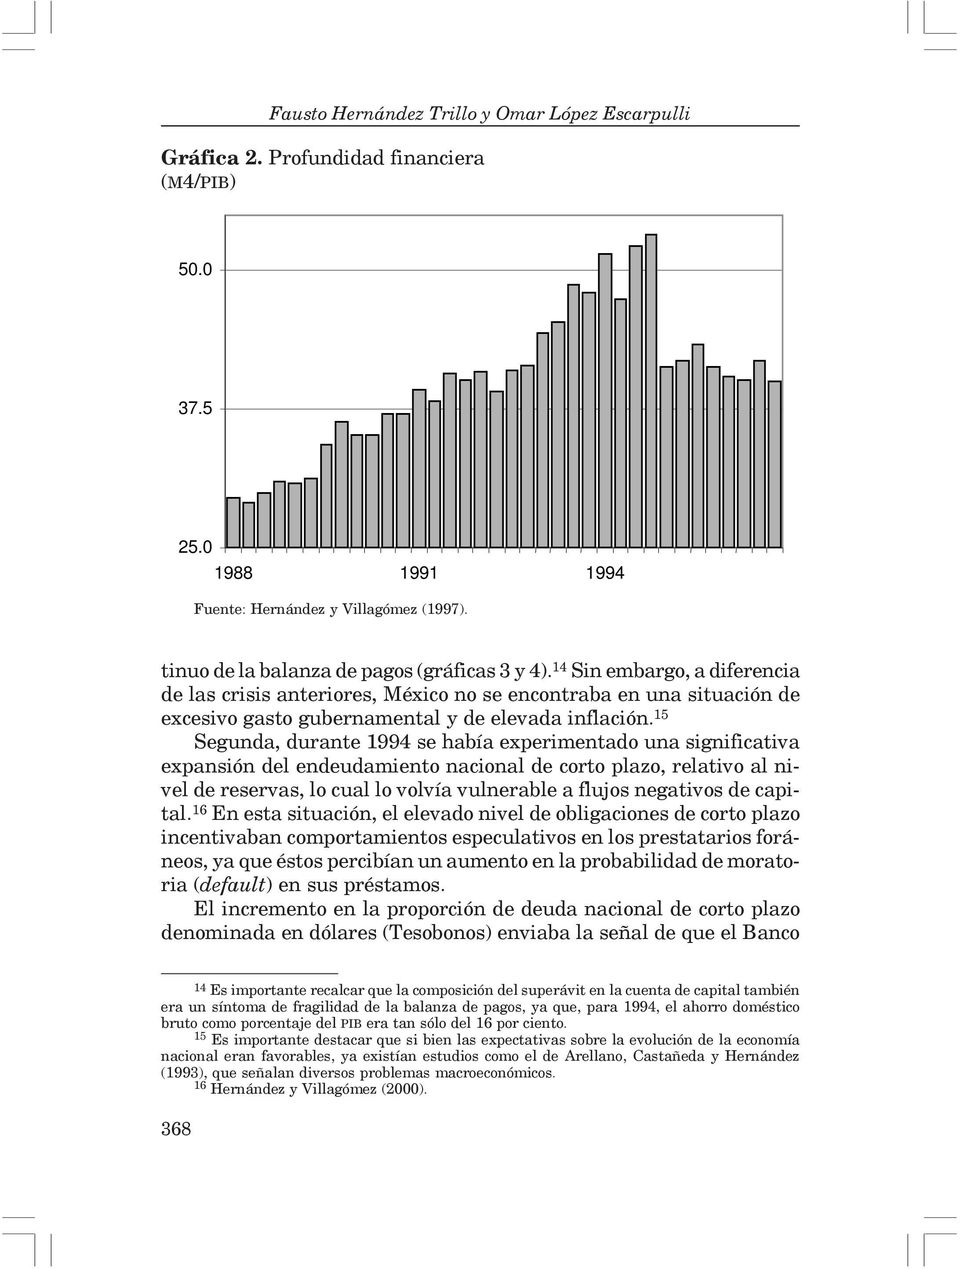 15 Segunda, durante 1994 se había experimentado una significativa expansión del endeudamiento nacional de corto plazo, relativo al nivel de reservas, lo cual lo volvía vulnerable a flujos negativos